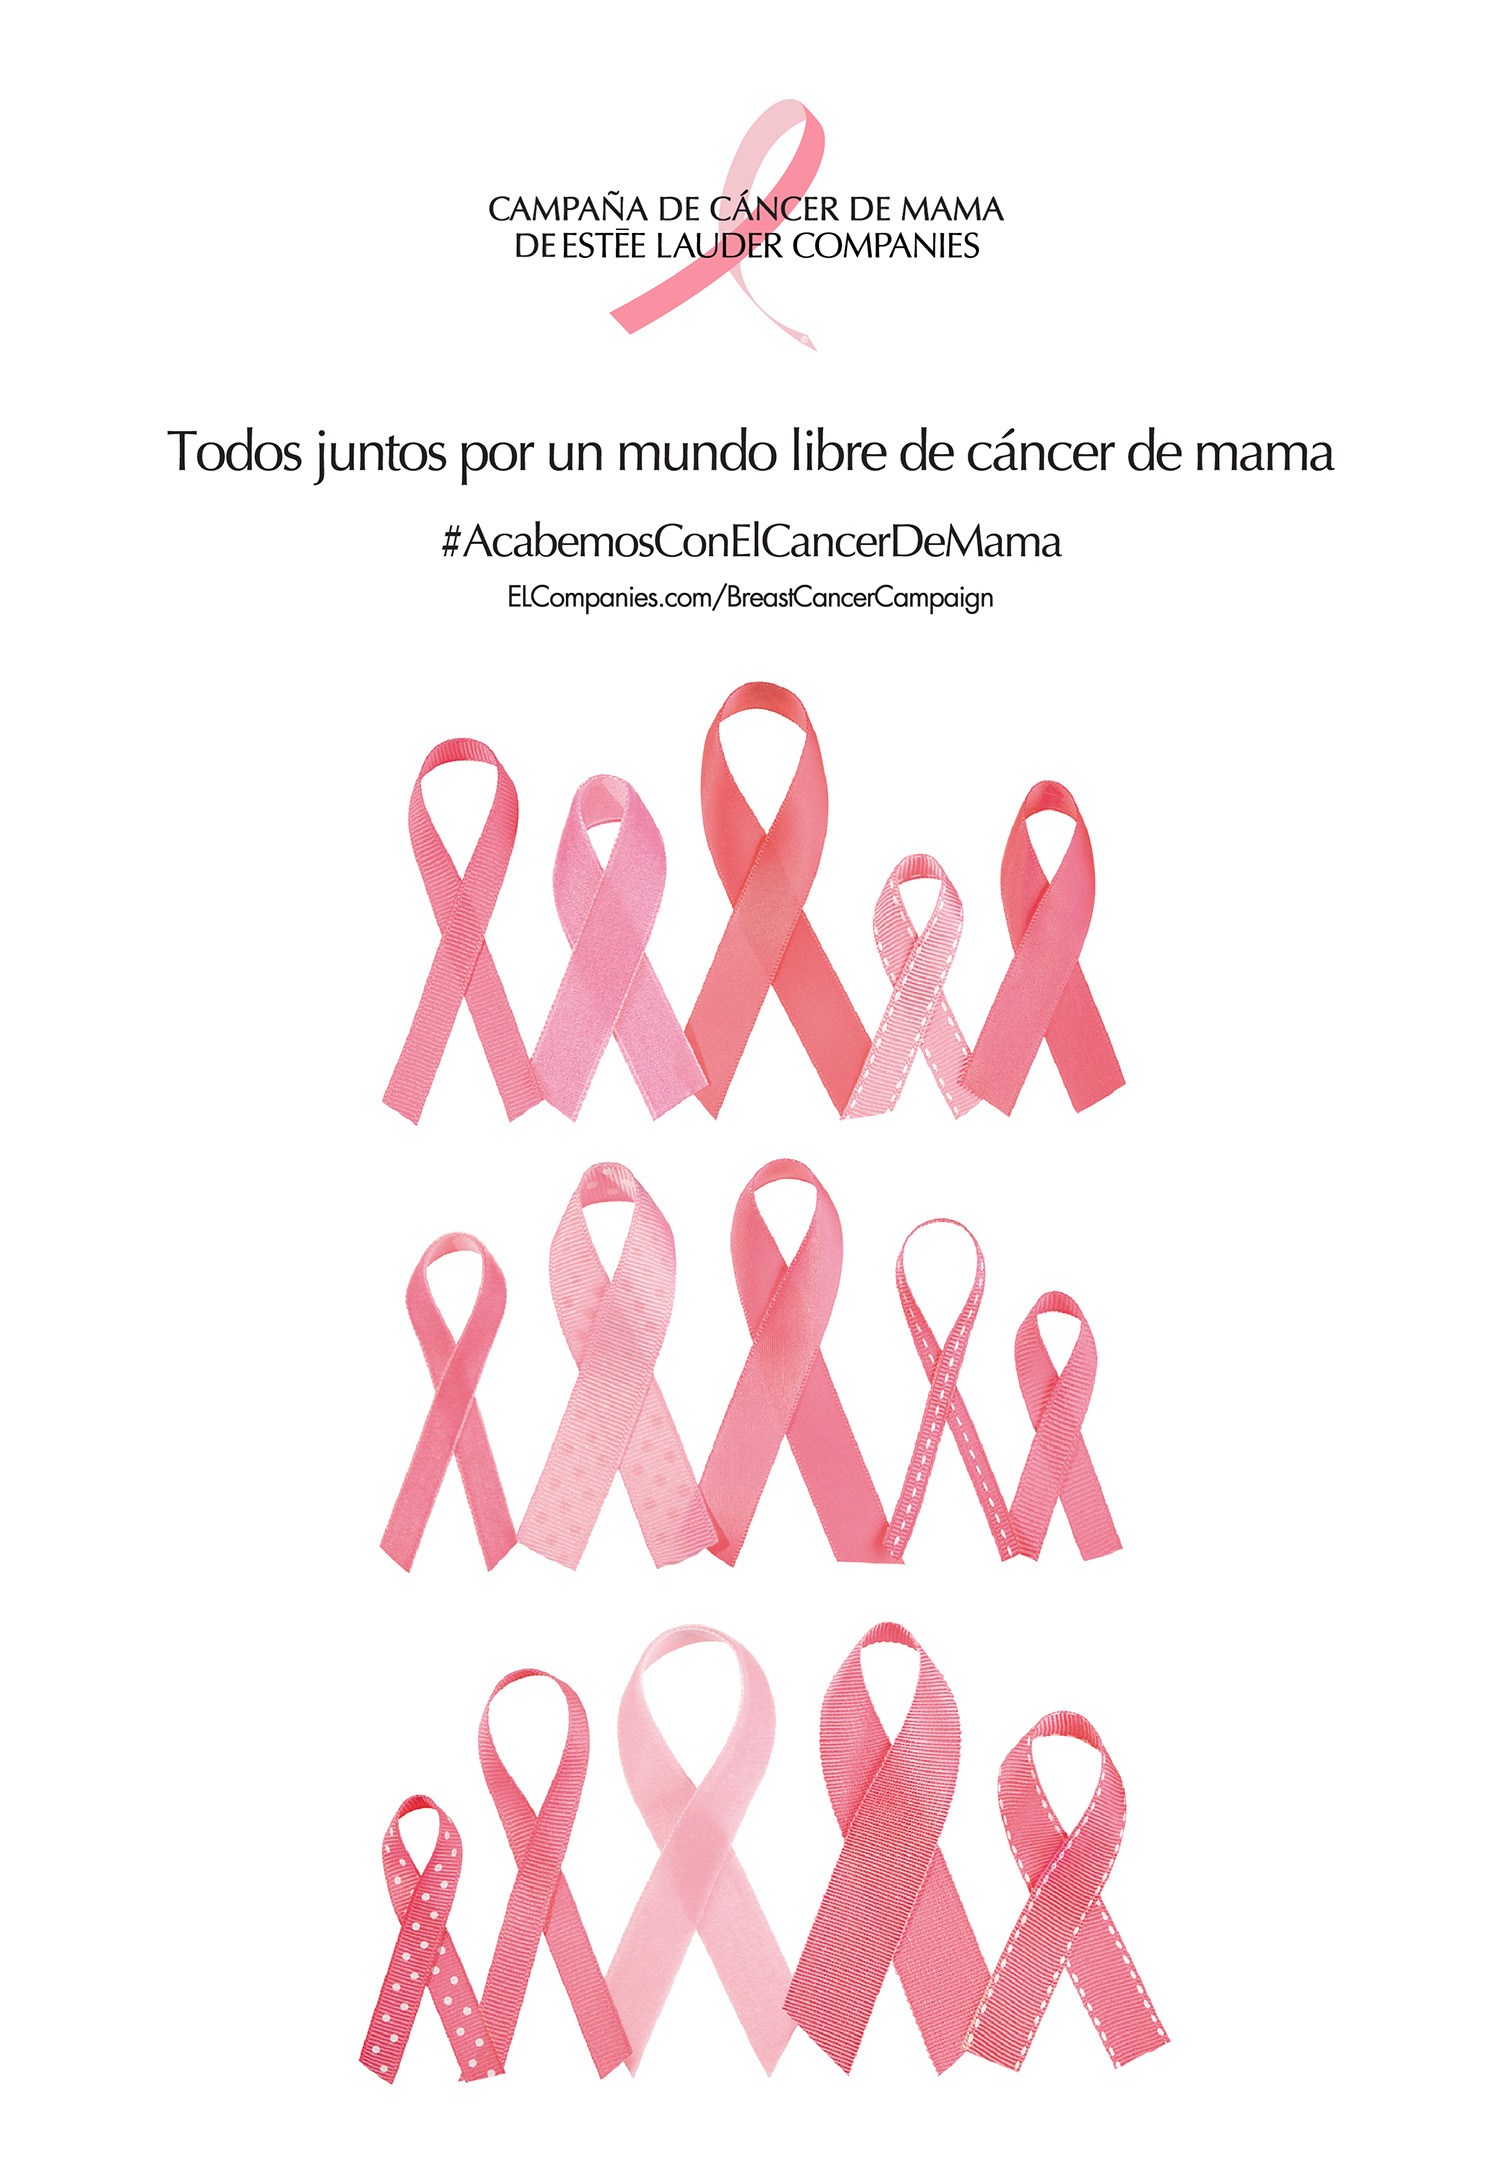 The Estée Lauder Companies' 2019 Breast Cancer Campaign